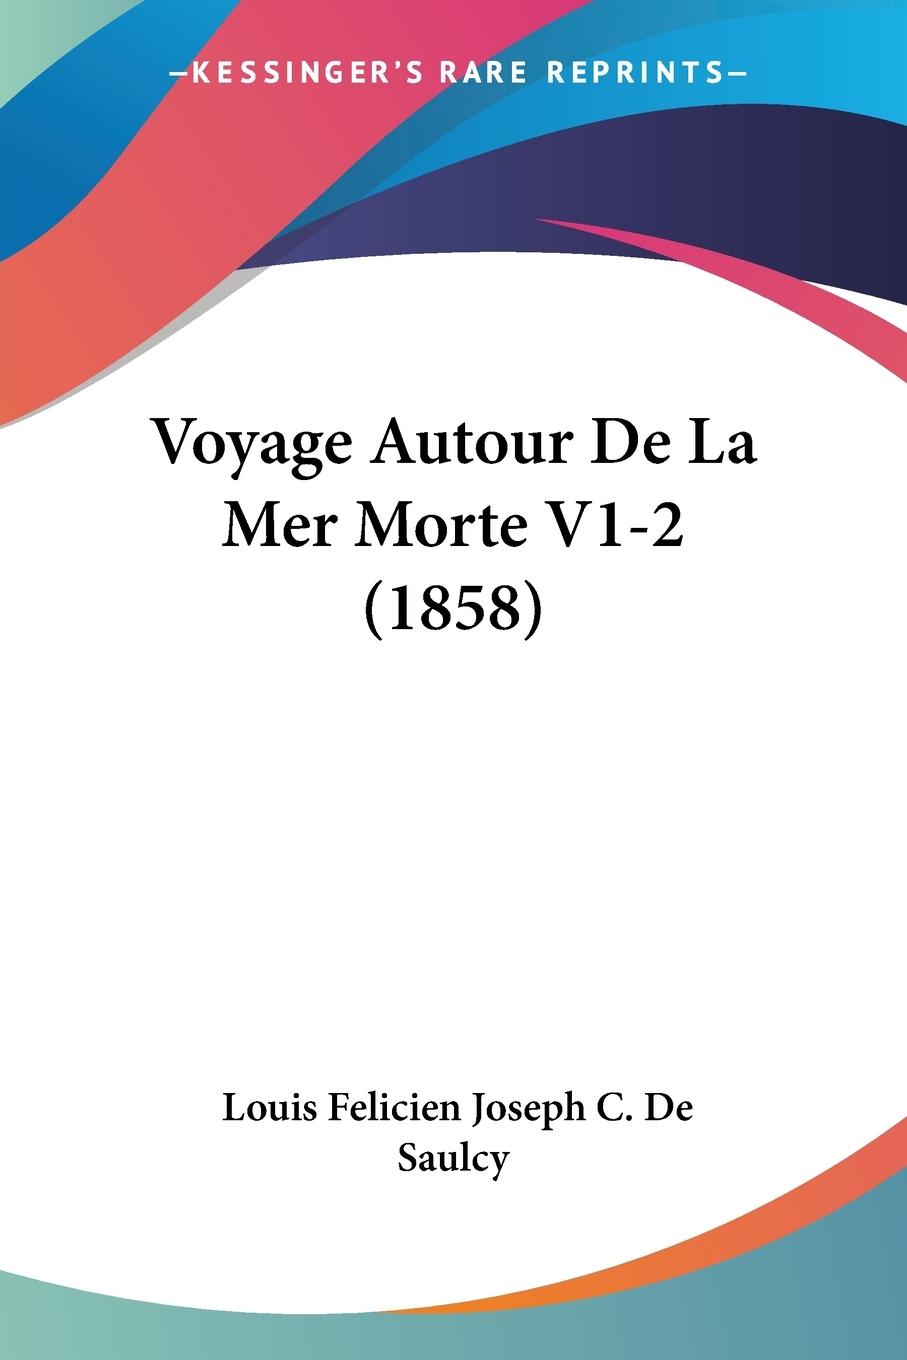 Voyage Autour De La Mer Morte V1-2 (1858) - De Saulcy, Louis Felicien Joseph C.